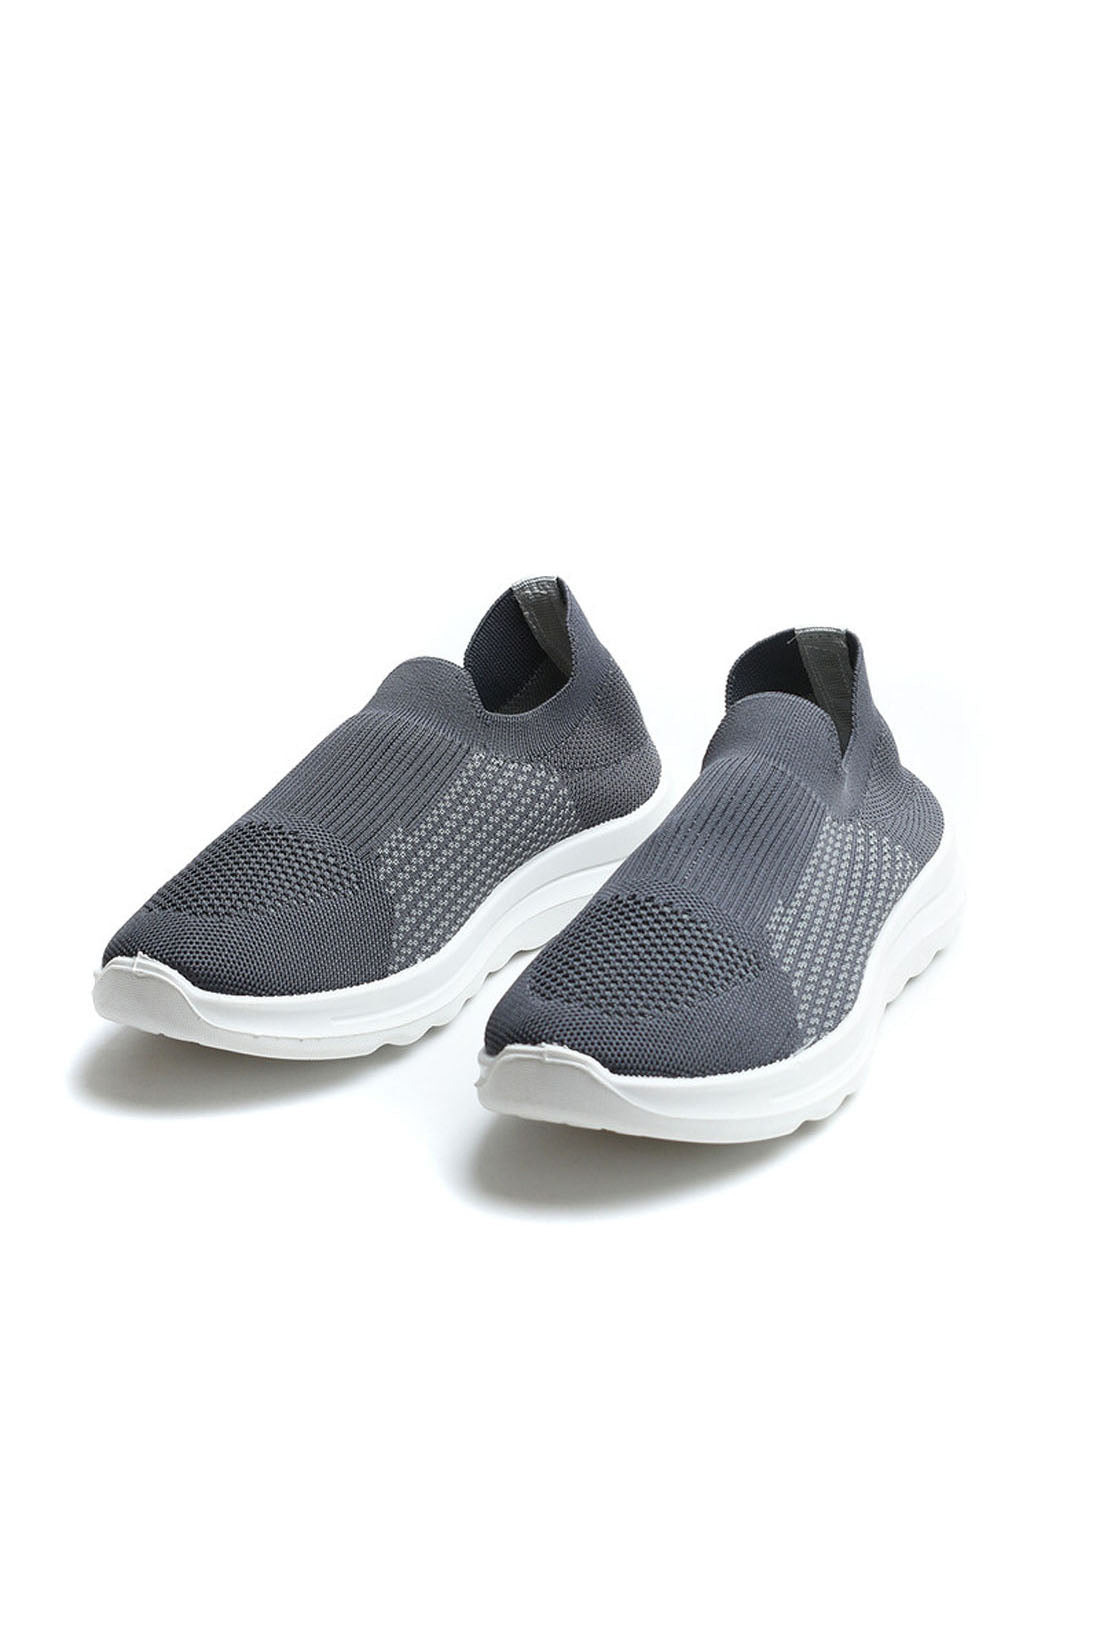 Knit Sneakers - Sportive Canvas Sock - Slip-On - Grey